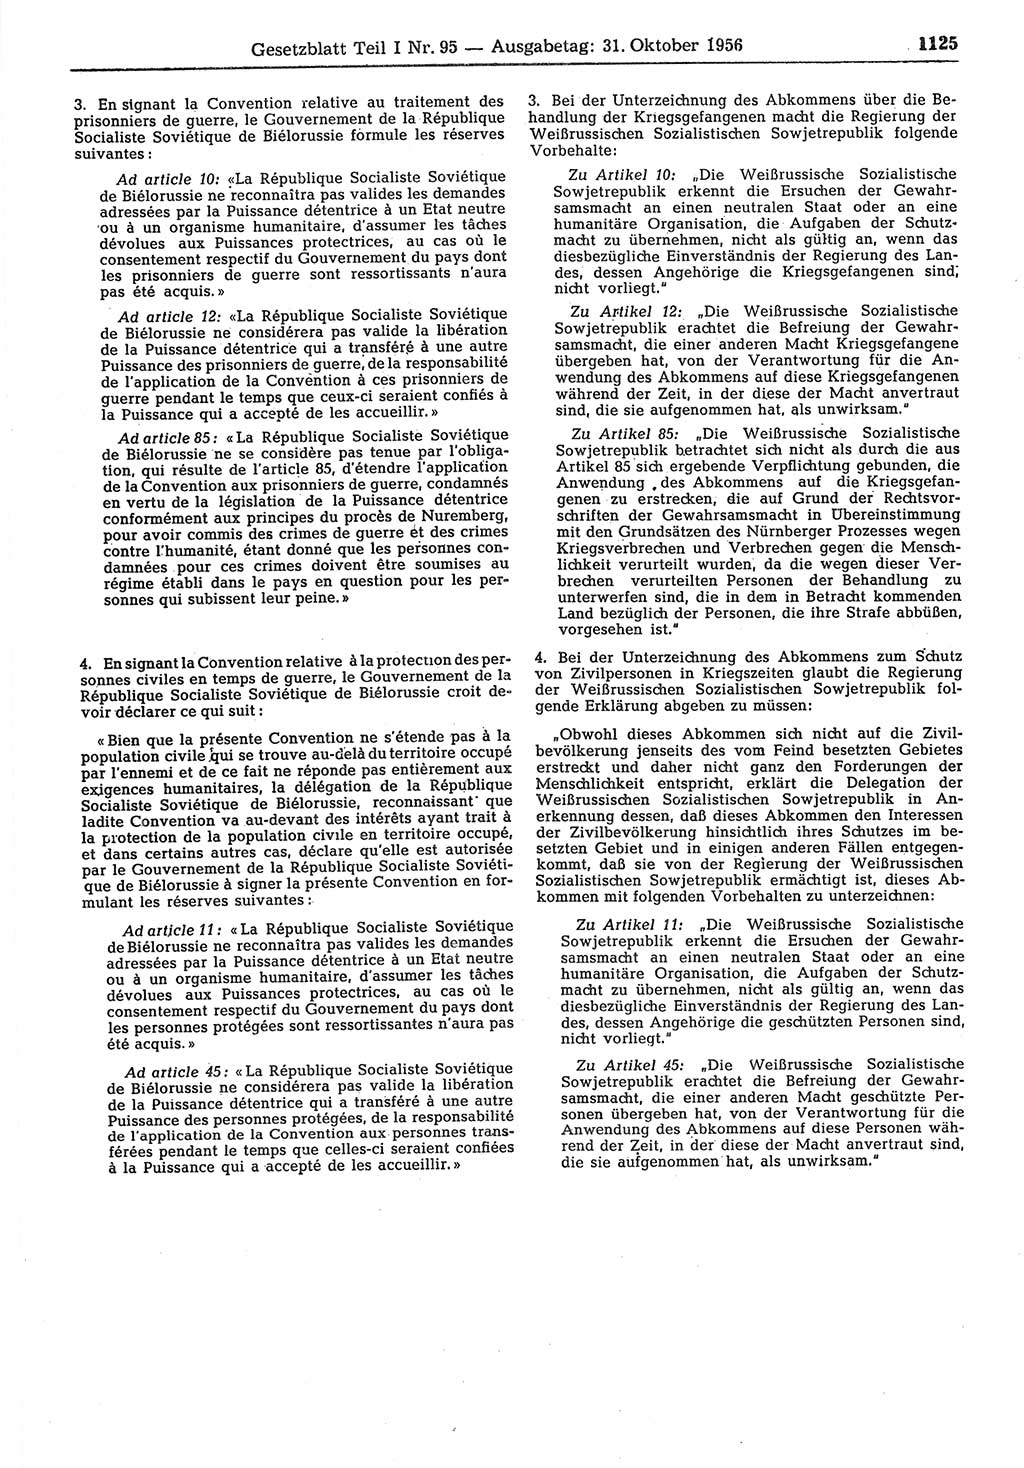 Gesetzblatt (GBl.) der Deutschen Demokratischen Republik (DDR) Teil Ⅰ 1956, Seite 1125 (GBl. DDR Ⅰ 1956, S. 1125)